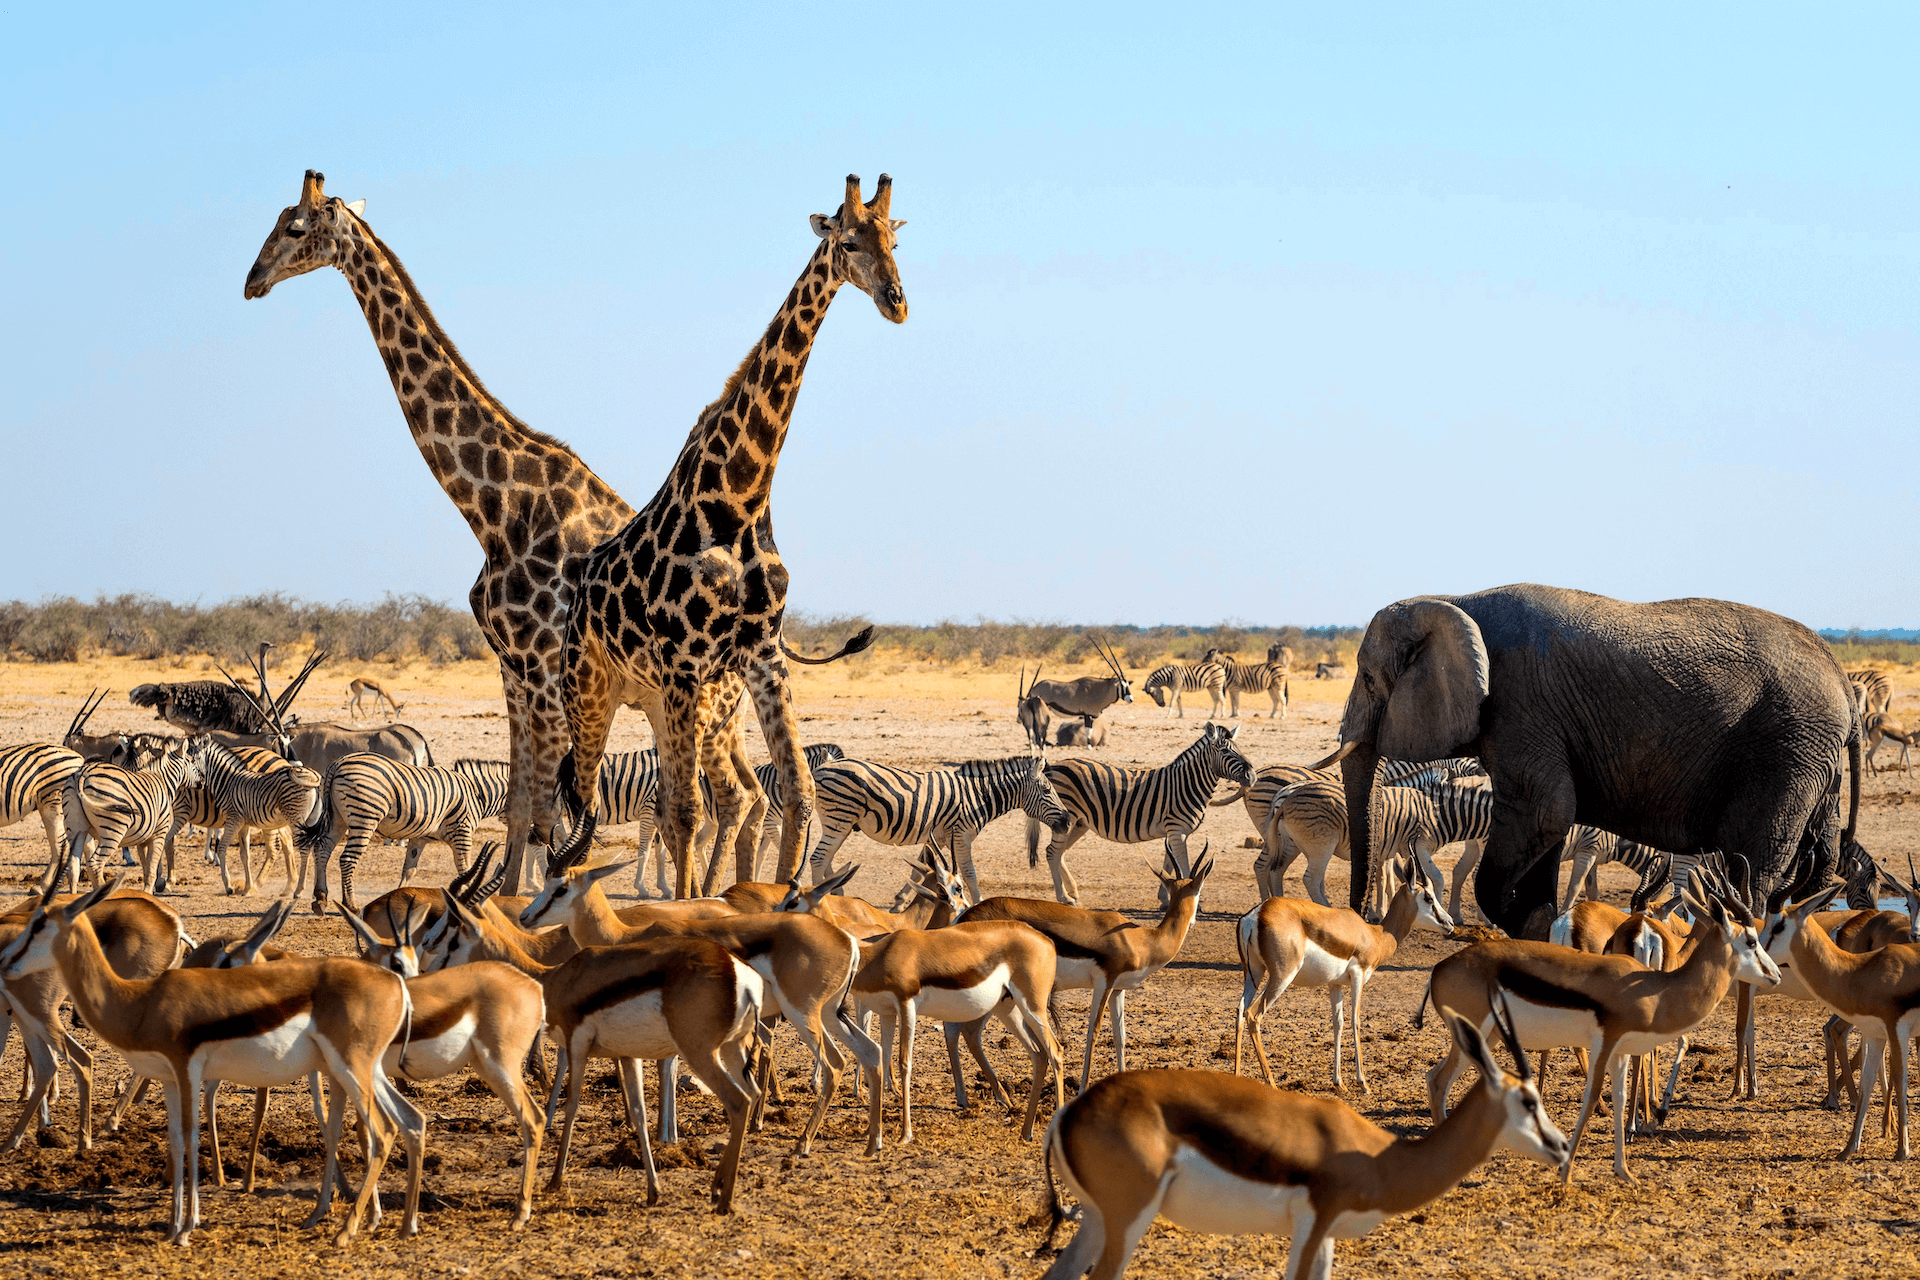 Animals in African Savanna